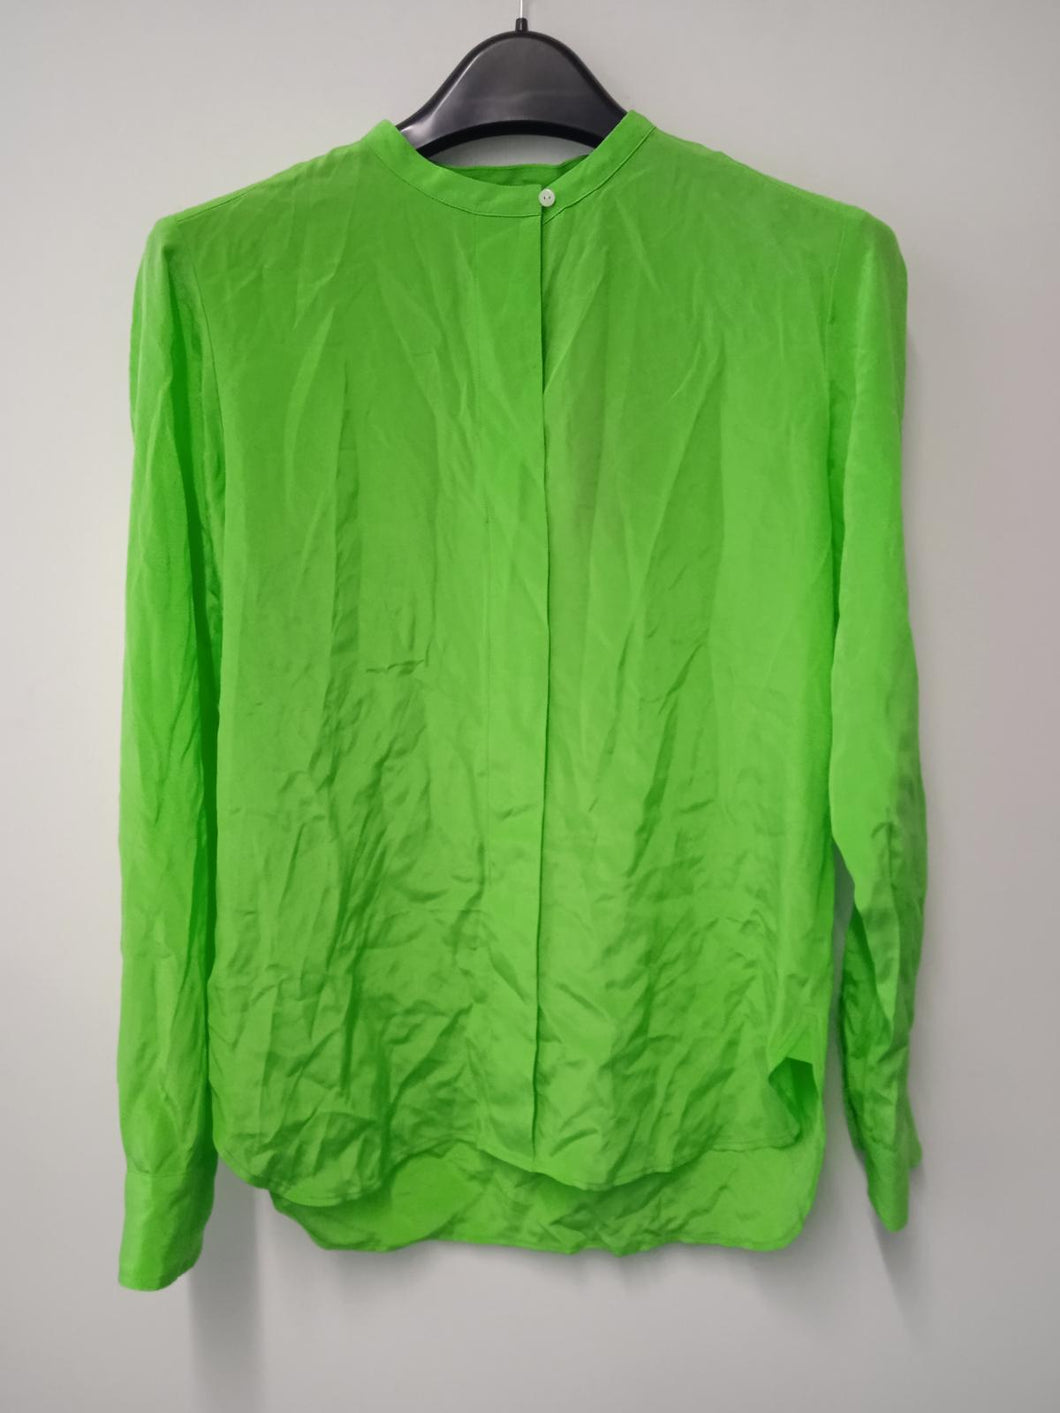 POLO RALPH LAUREN Ladies Green Silk Long Sleeve Clarissa Shirt Size UK4 NEW